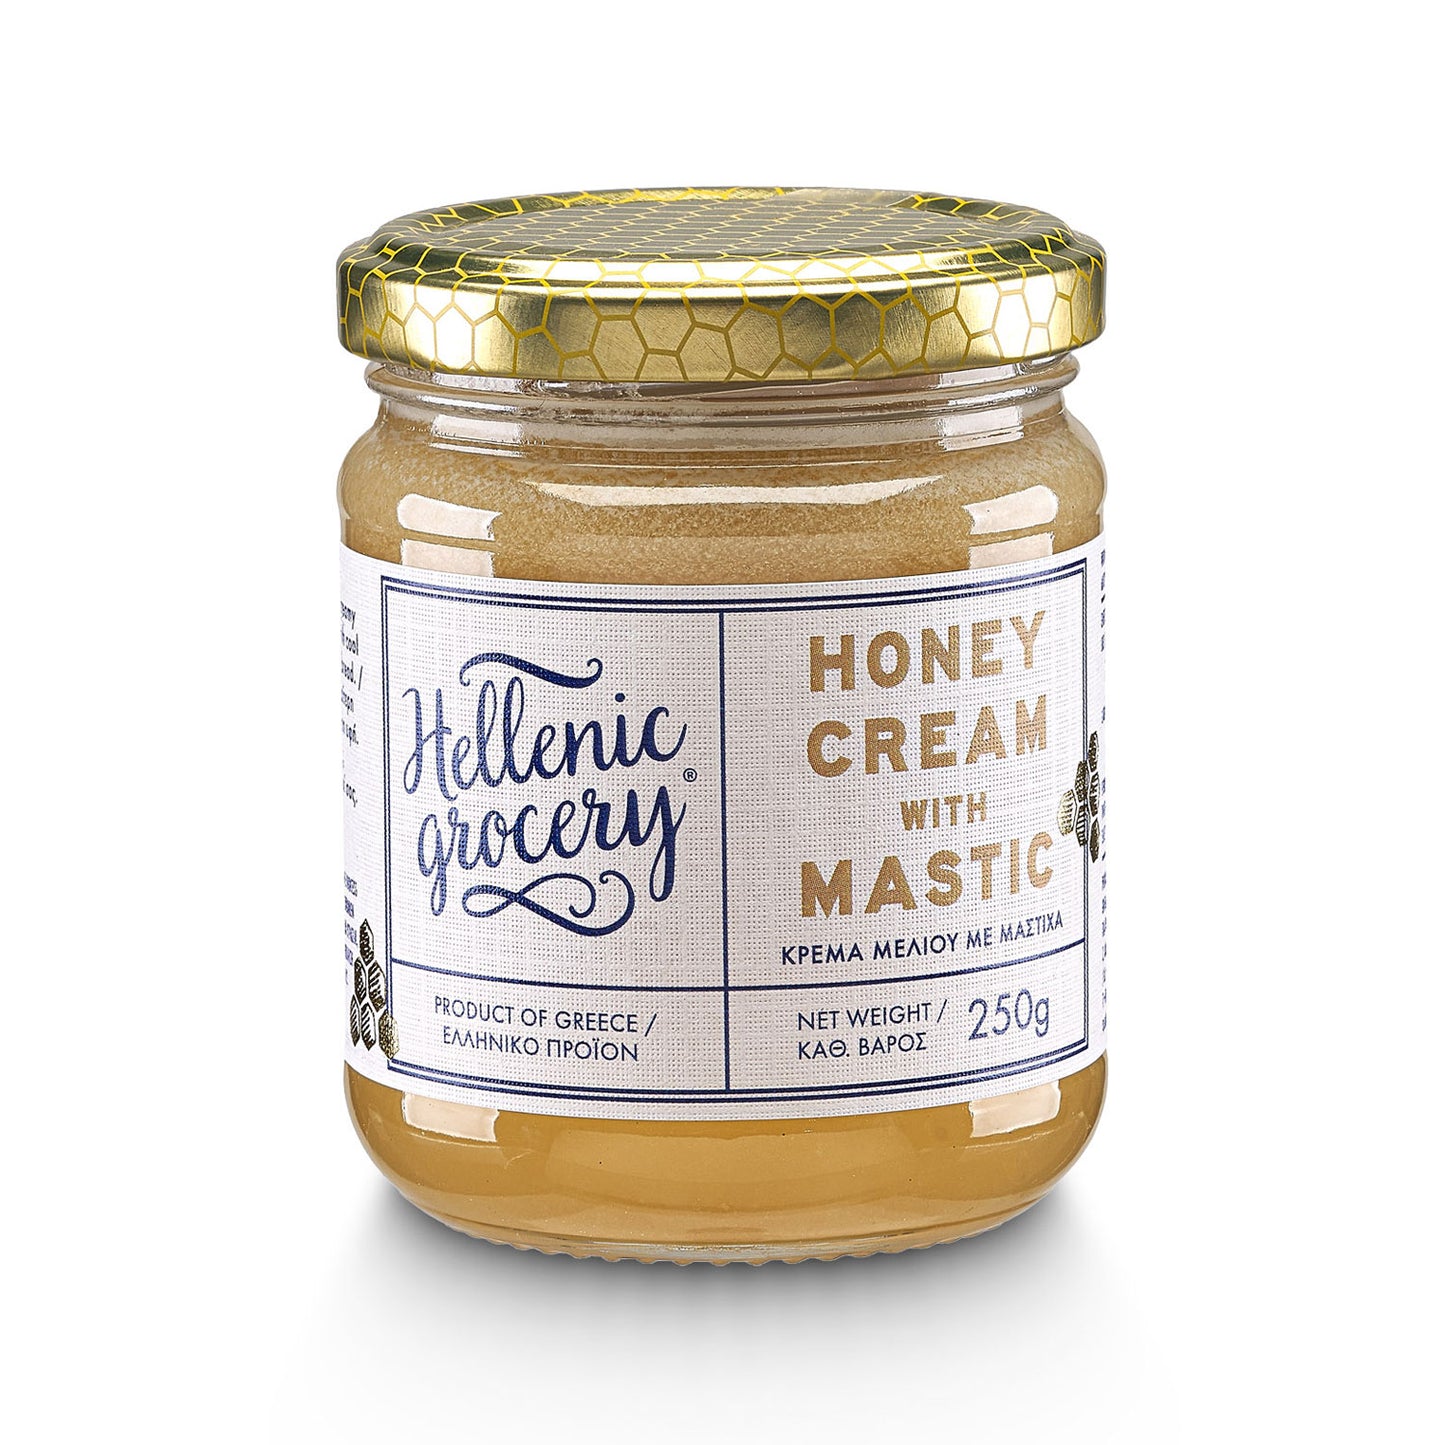 Crema di Miele con Mastica - 250g - Hellenic Grocery